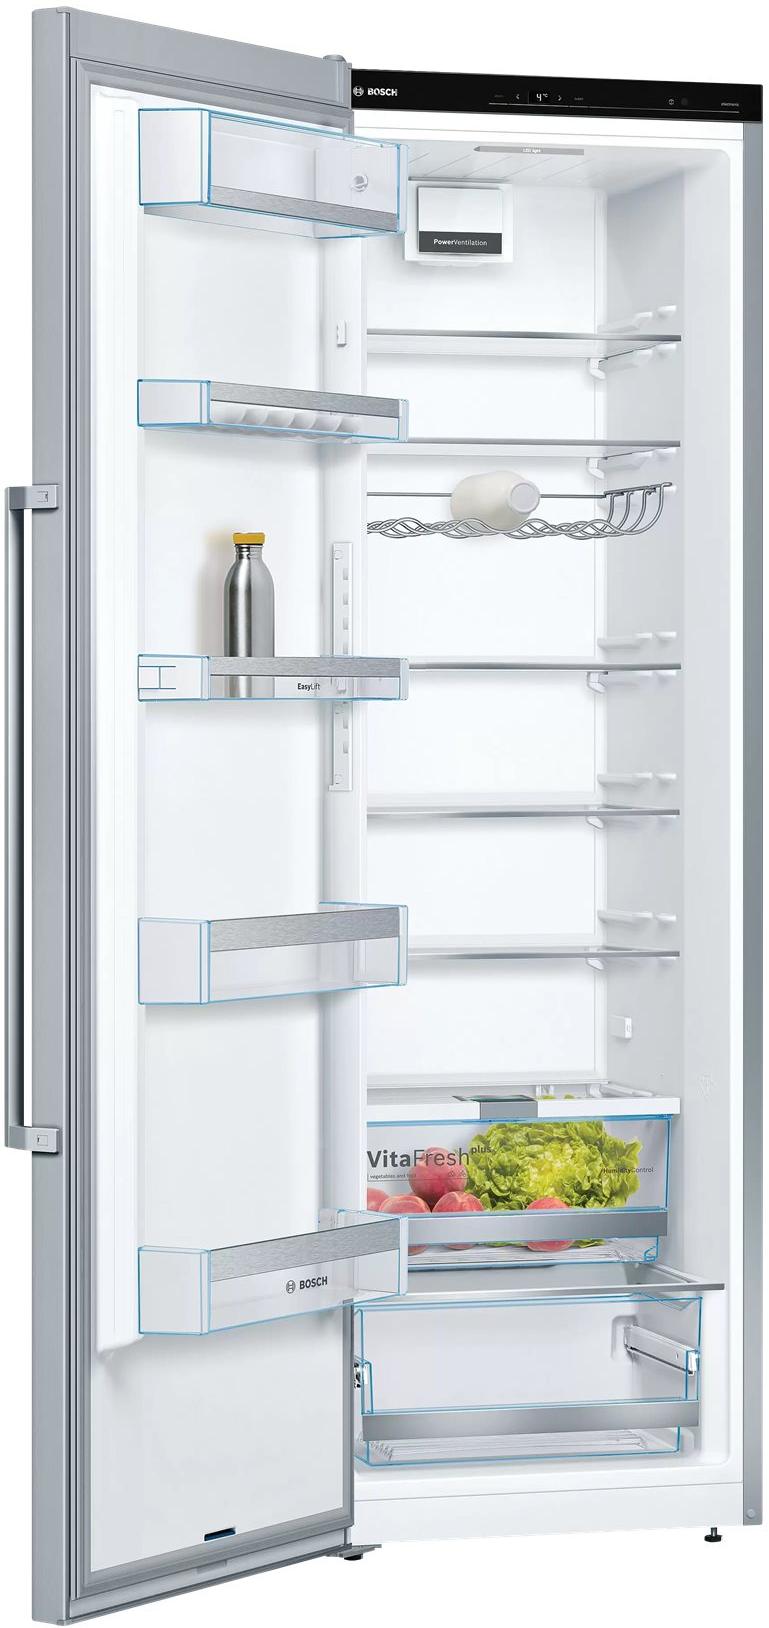 4242005222186 Bosch KSV36AIDP - Fritstående køleskab Hvidevarer,Køleskabe,Fritstående køleskabe 1400221860 KSV36AIDP